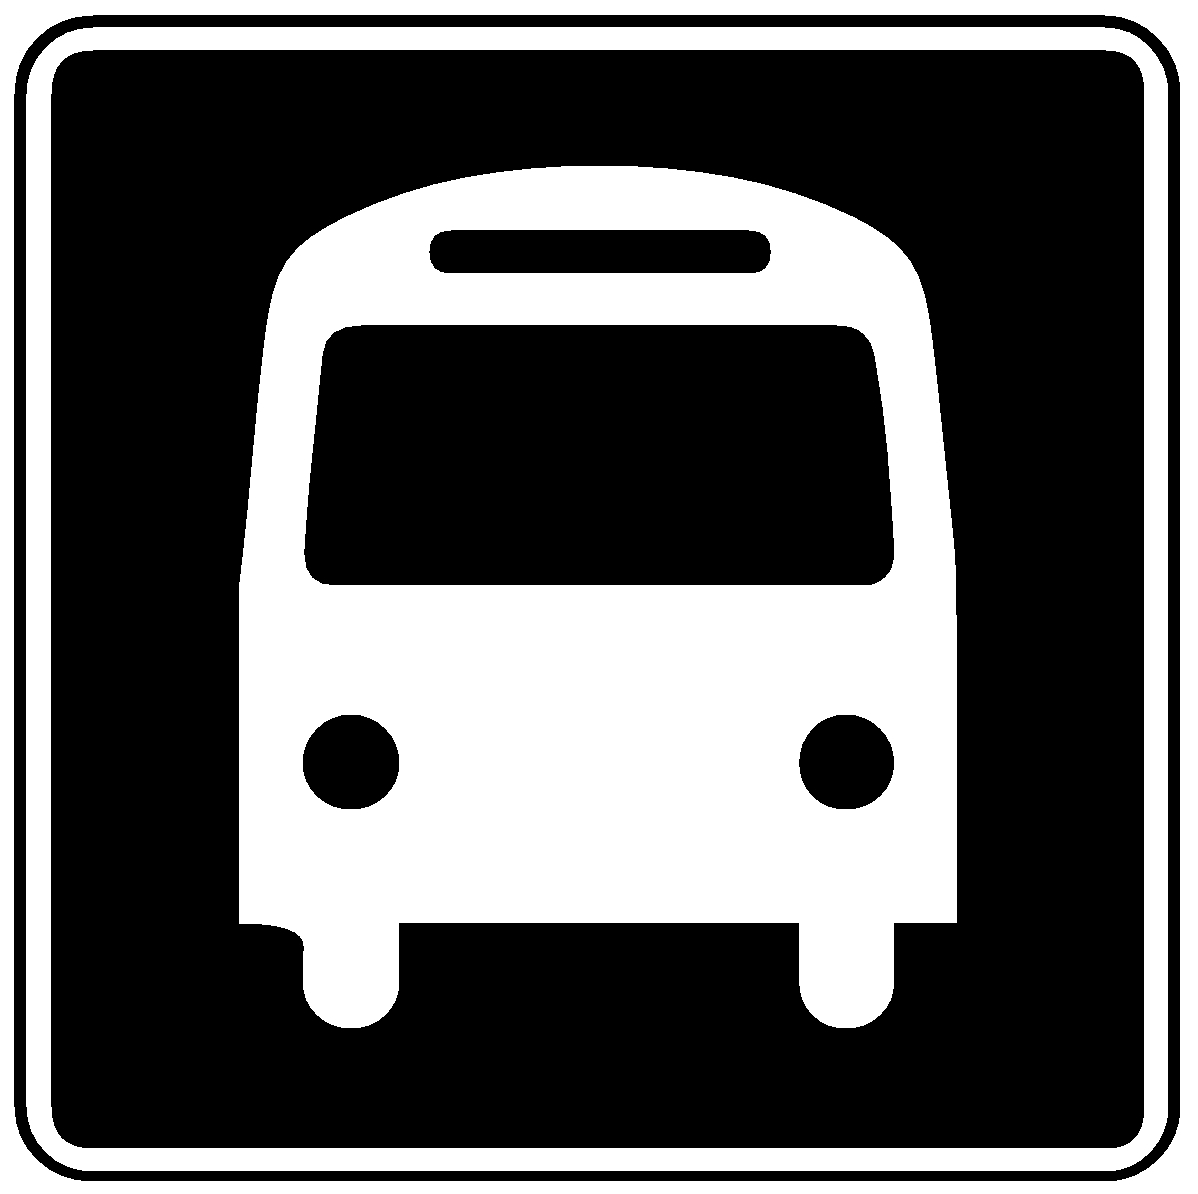 602 - NORTH STAR / MEDICAL CENTER - WEST Bus Schedule